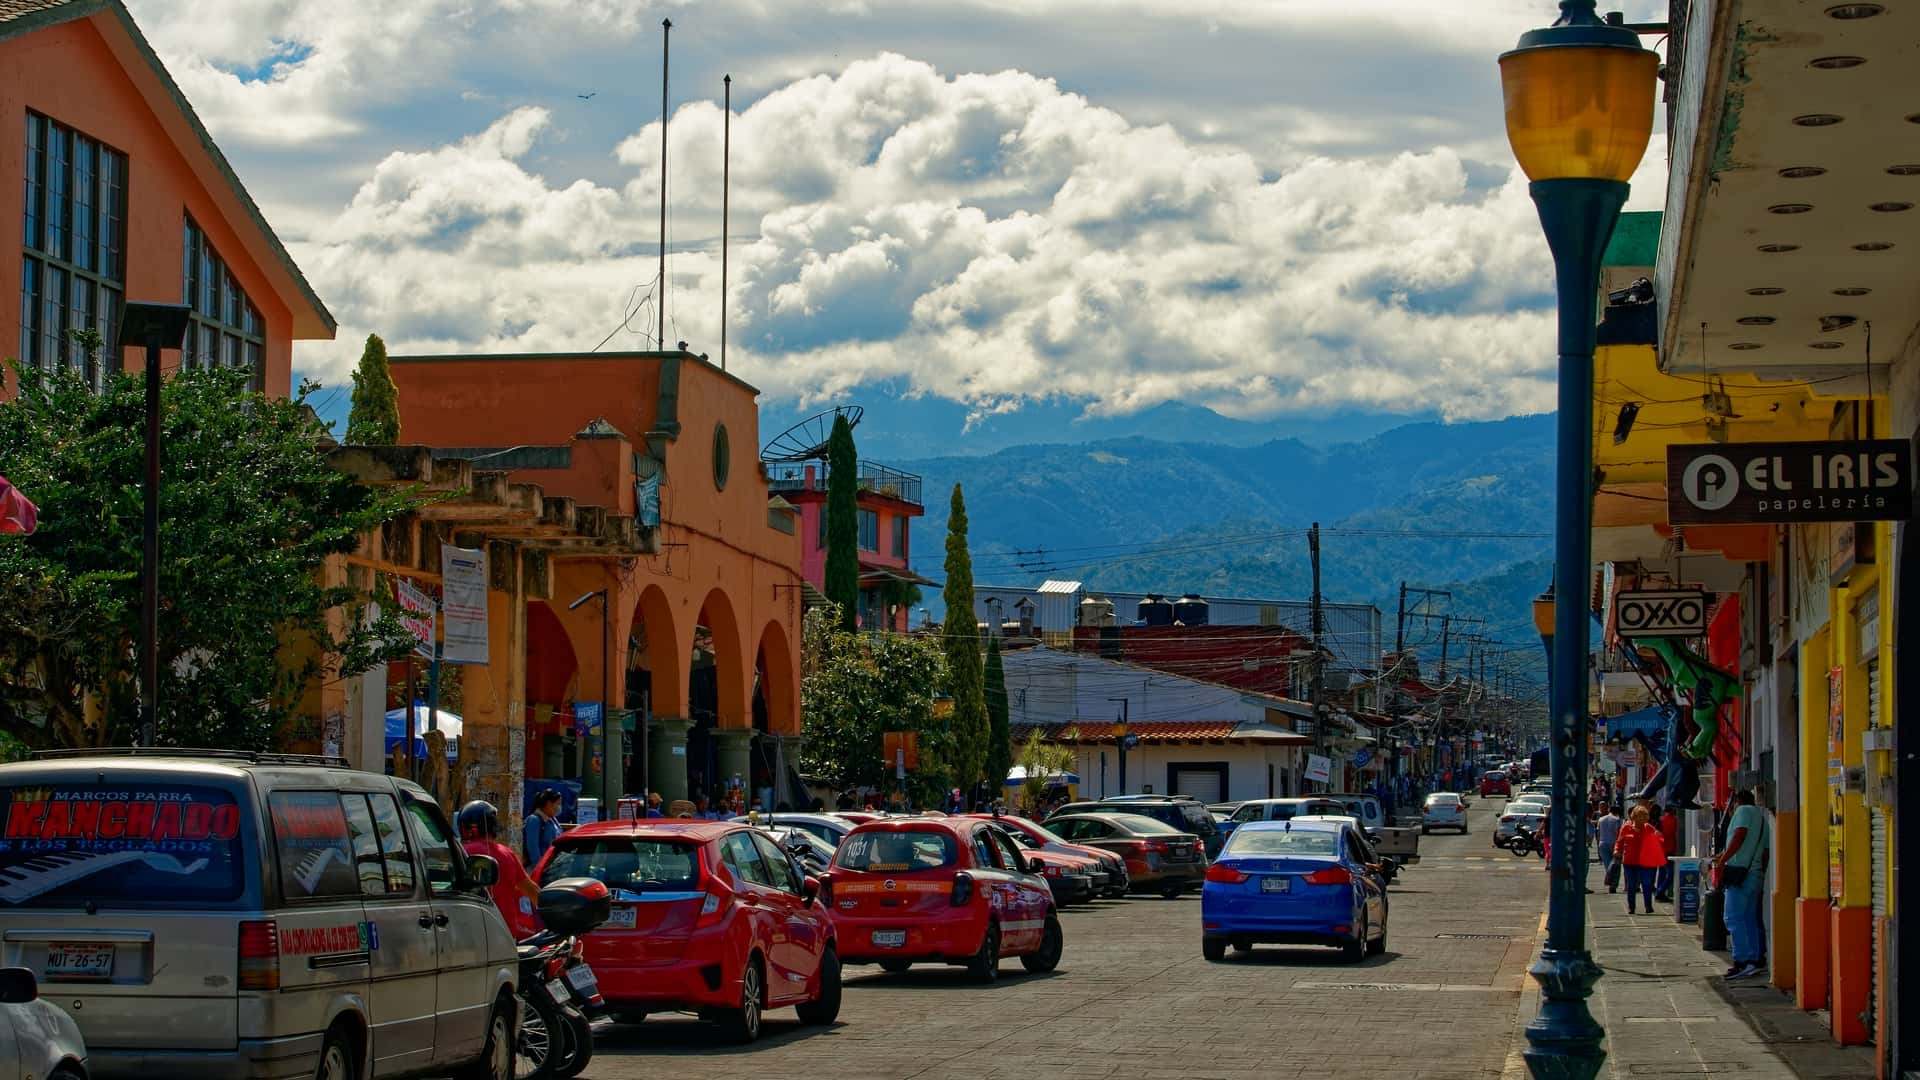 calles de coatepec que es una localidad que dispone de sucursales de megacable